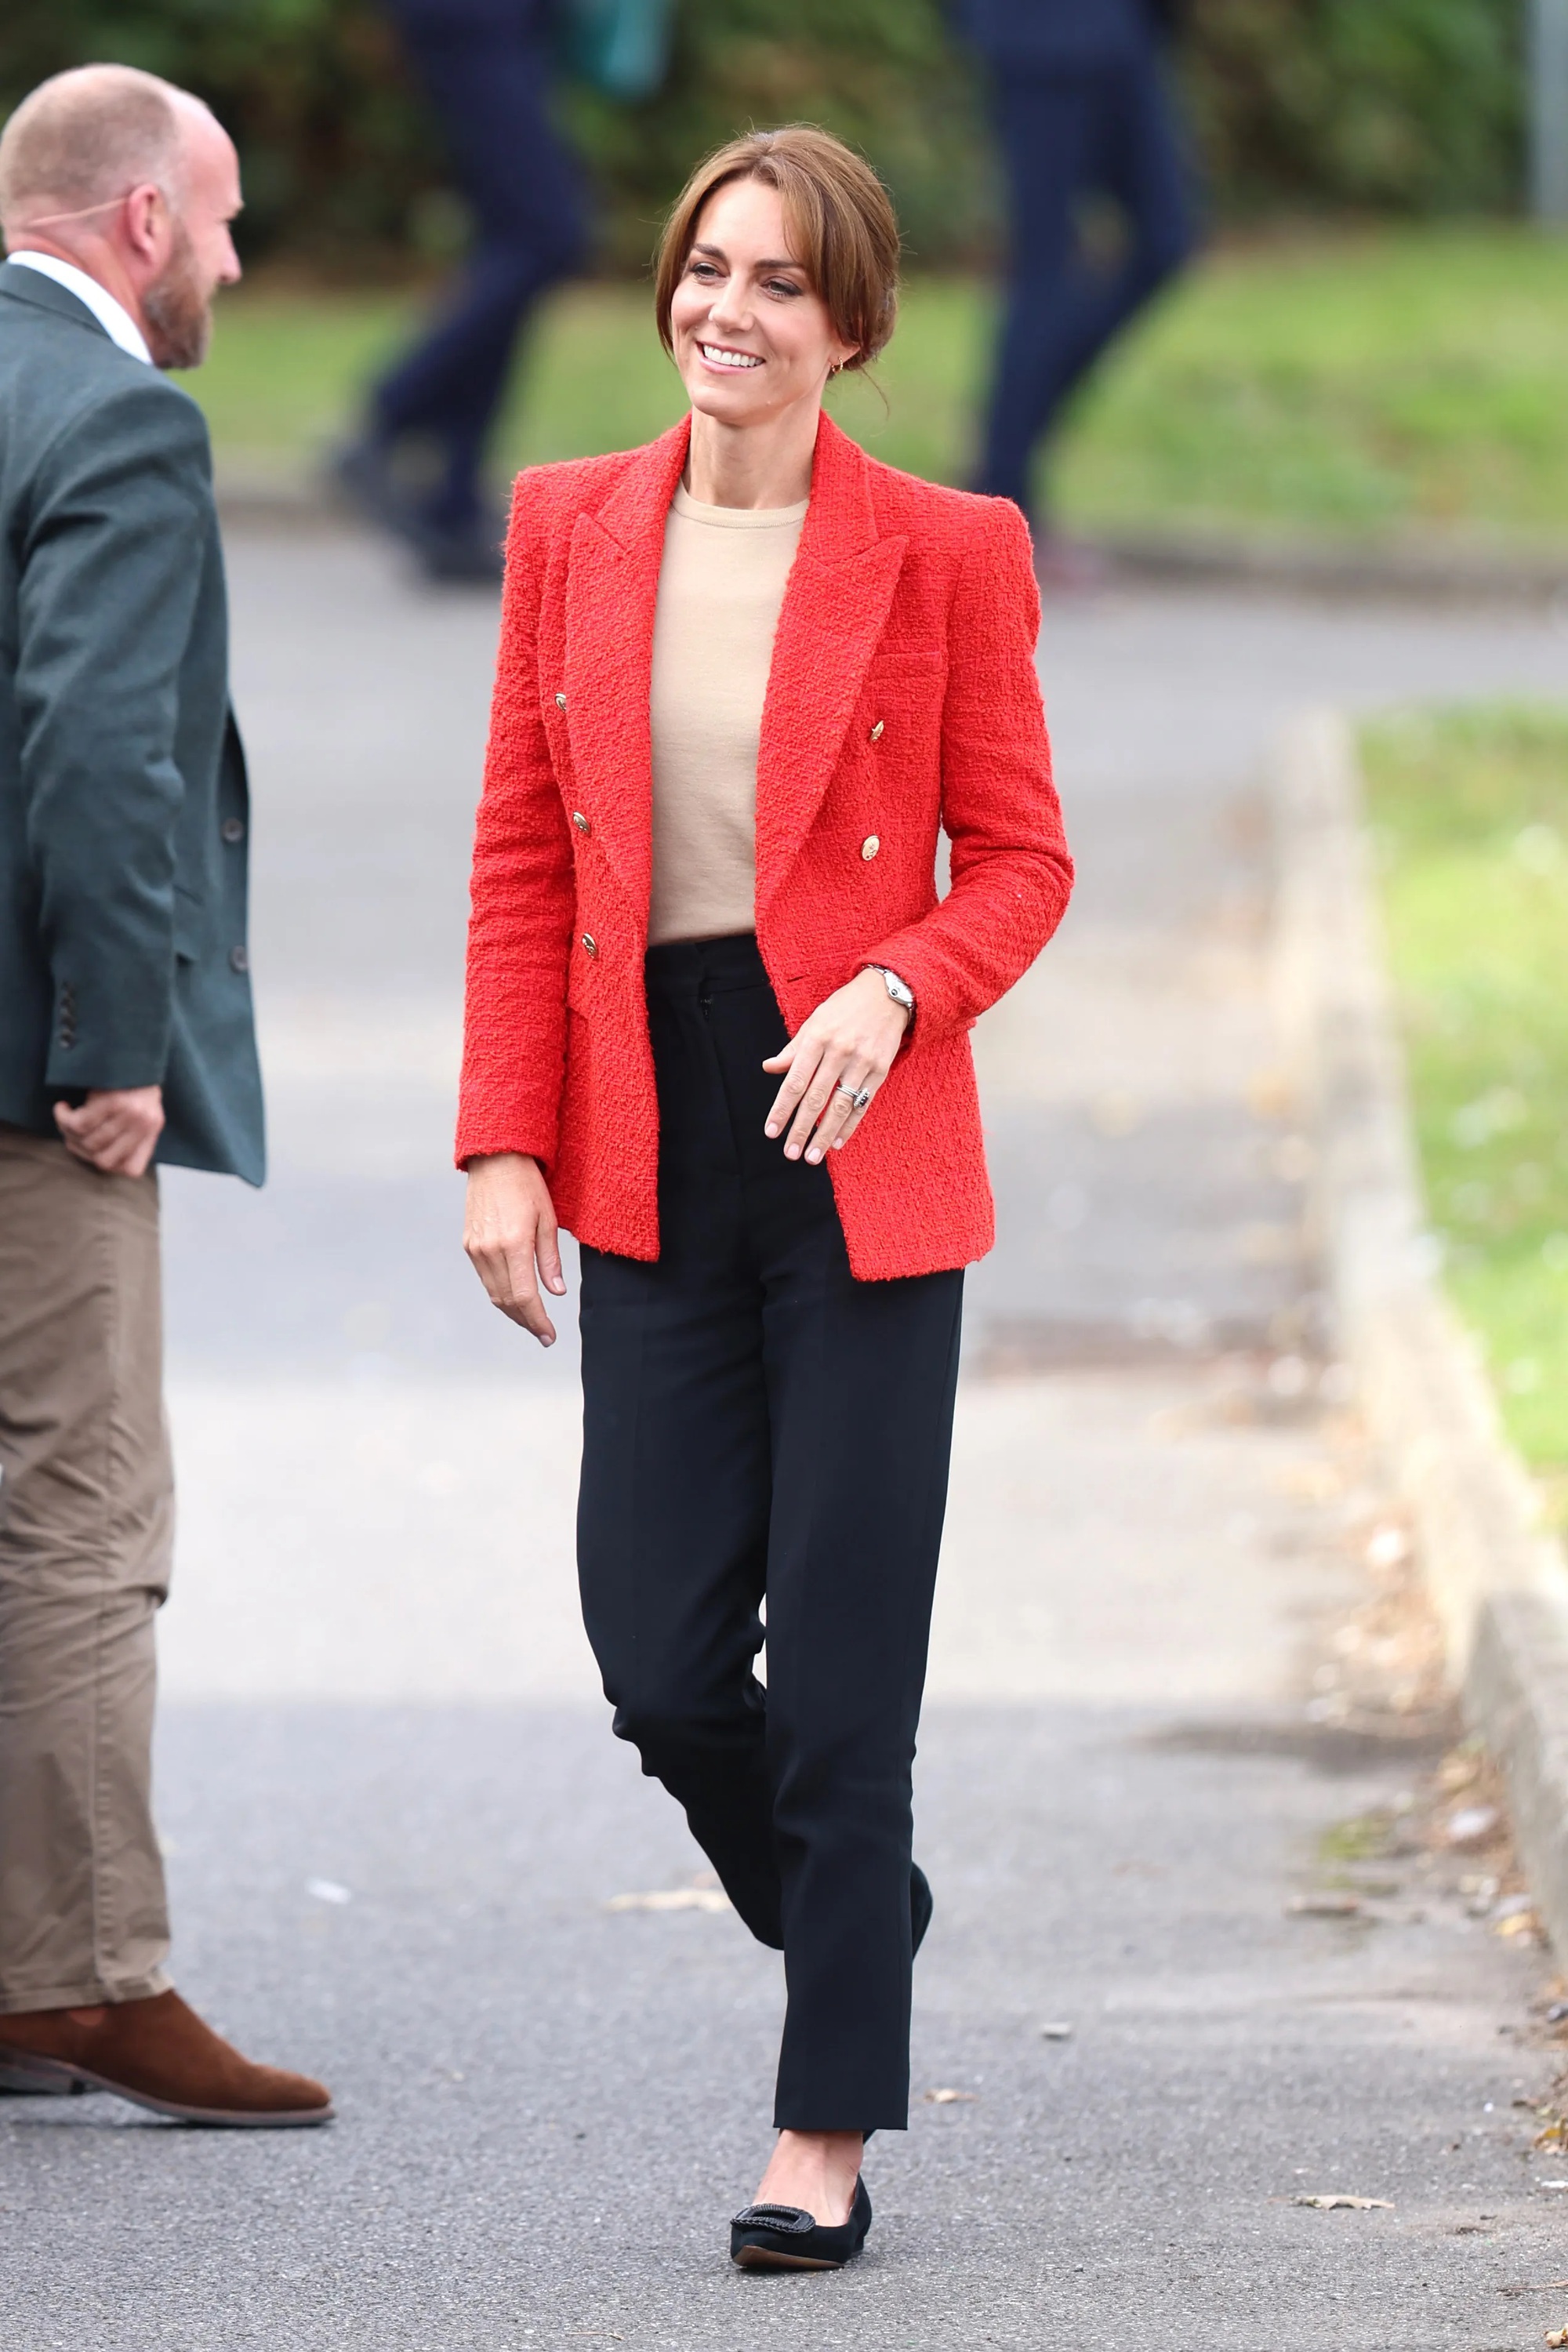 Vương phi Kate Middleton chính là sách mẫu diện trang phục màu sắc sang trọng, tinh tế - Ảnh 1.